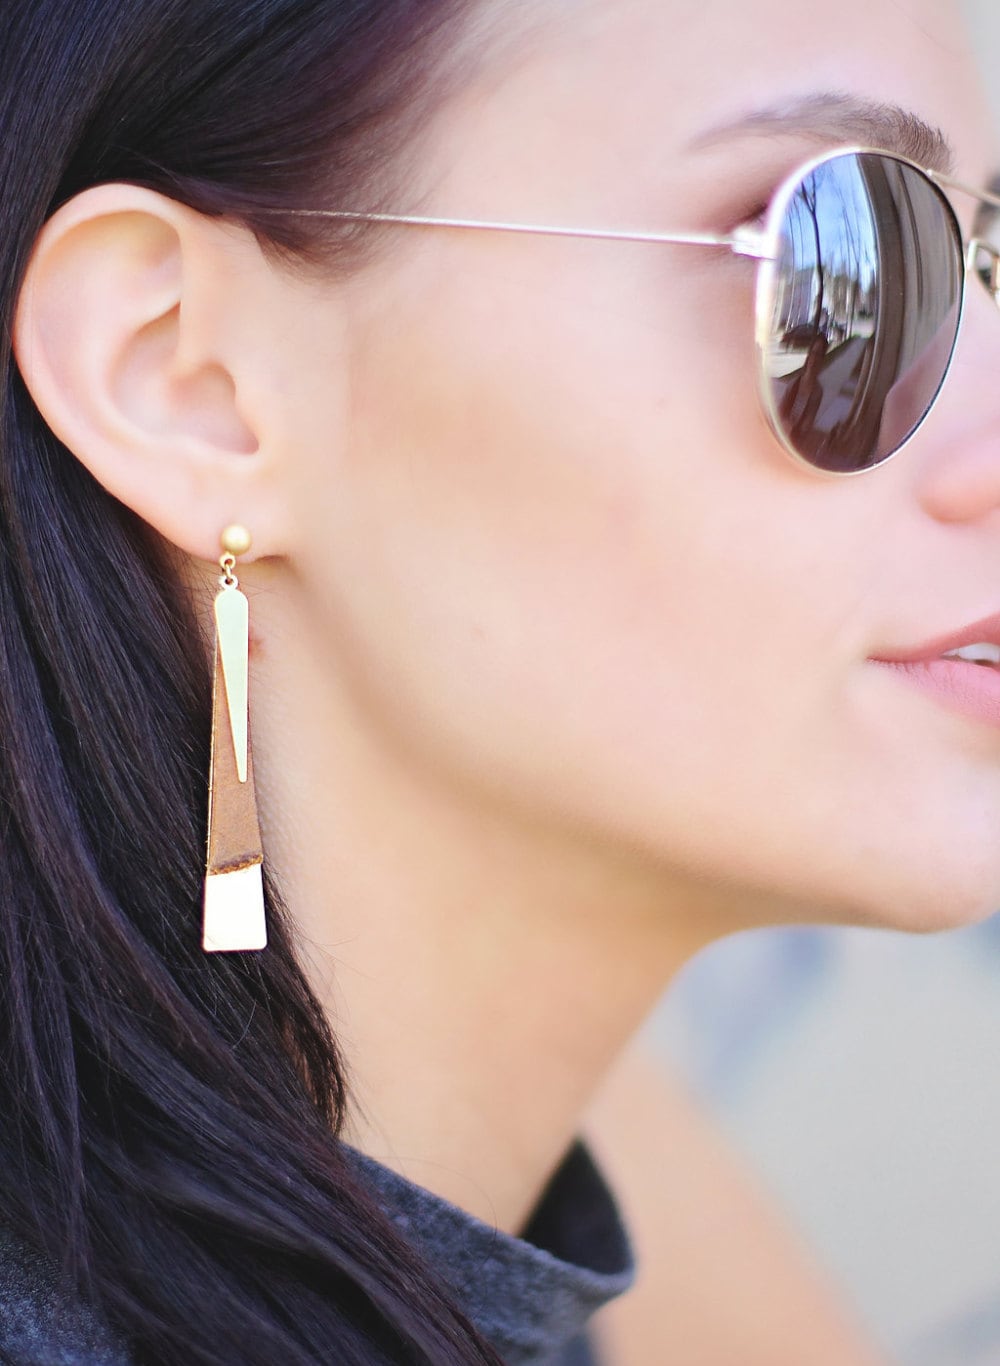 Leather Earrings - Brass Earrings - Minimalist Earrings - Dangle Earrings - Nickel Free Earrings - Boho Chic Earrings - Post Earrings